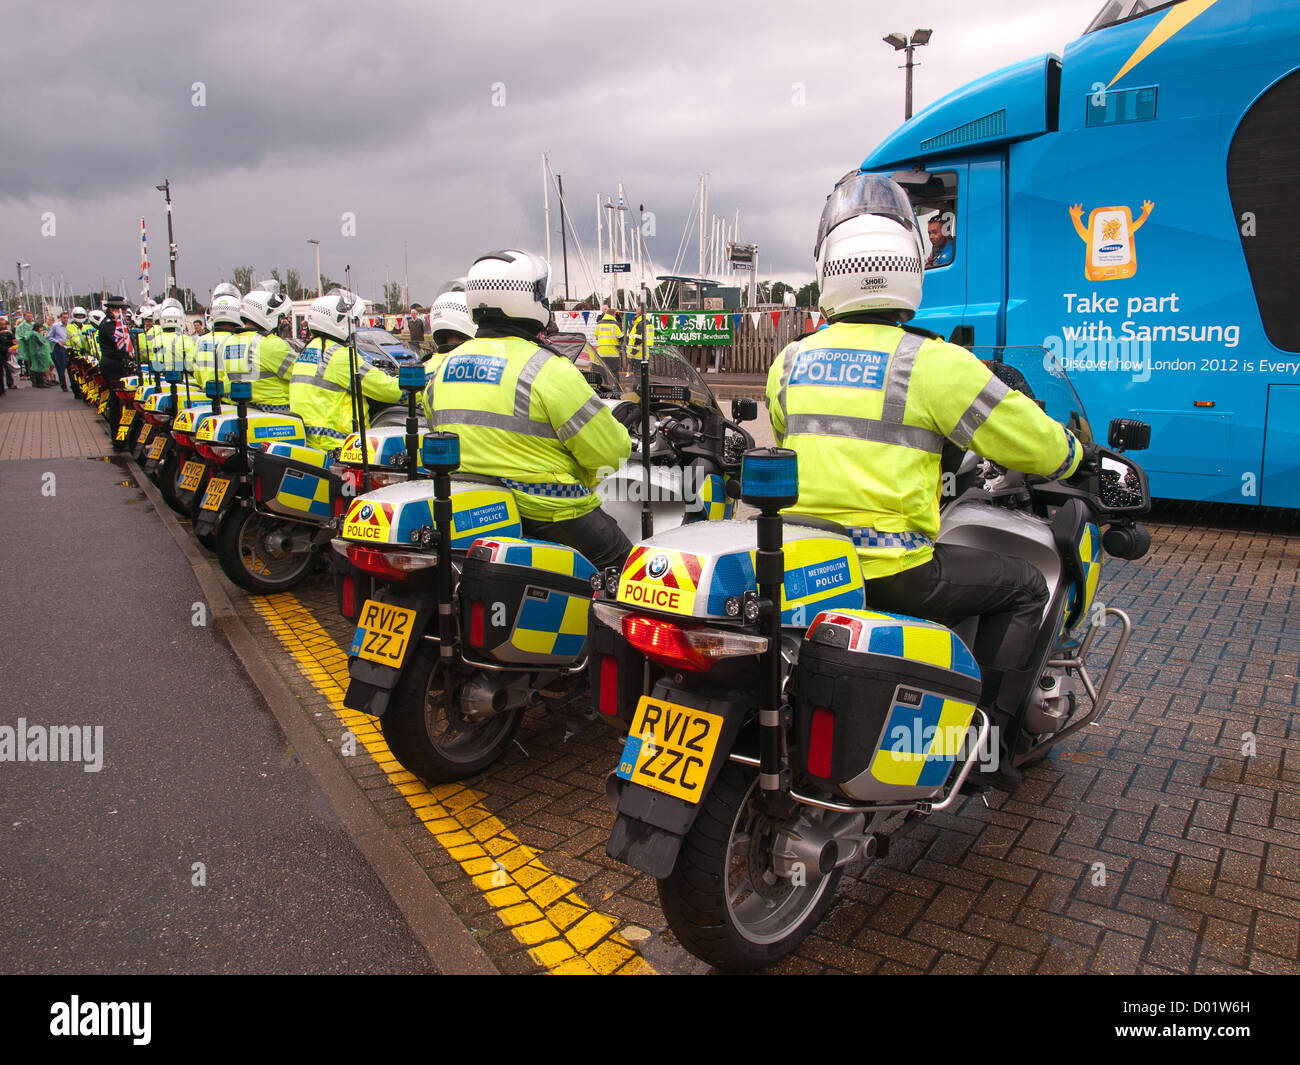 Torcia olimpica Lymington Hampshire England Regno Unito - polizia moto in attesa di guidare sul Wightlink traghetto per auto Foto Stock